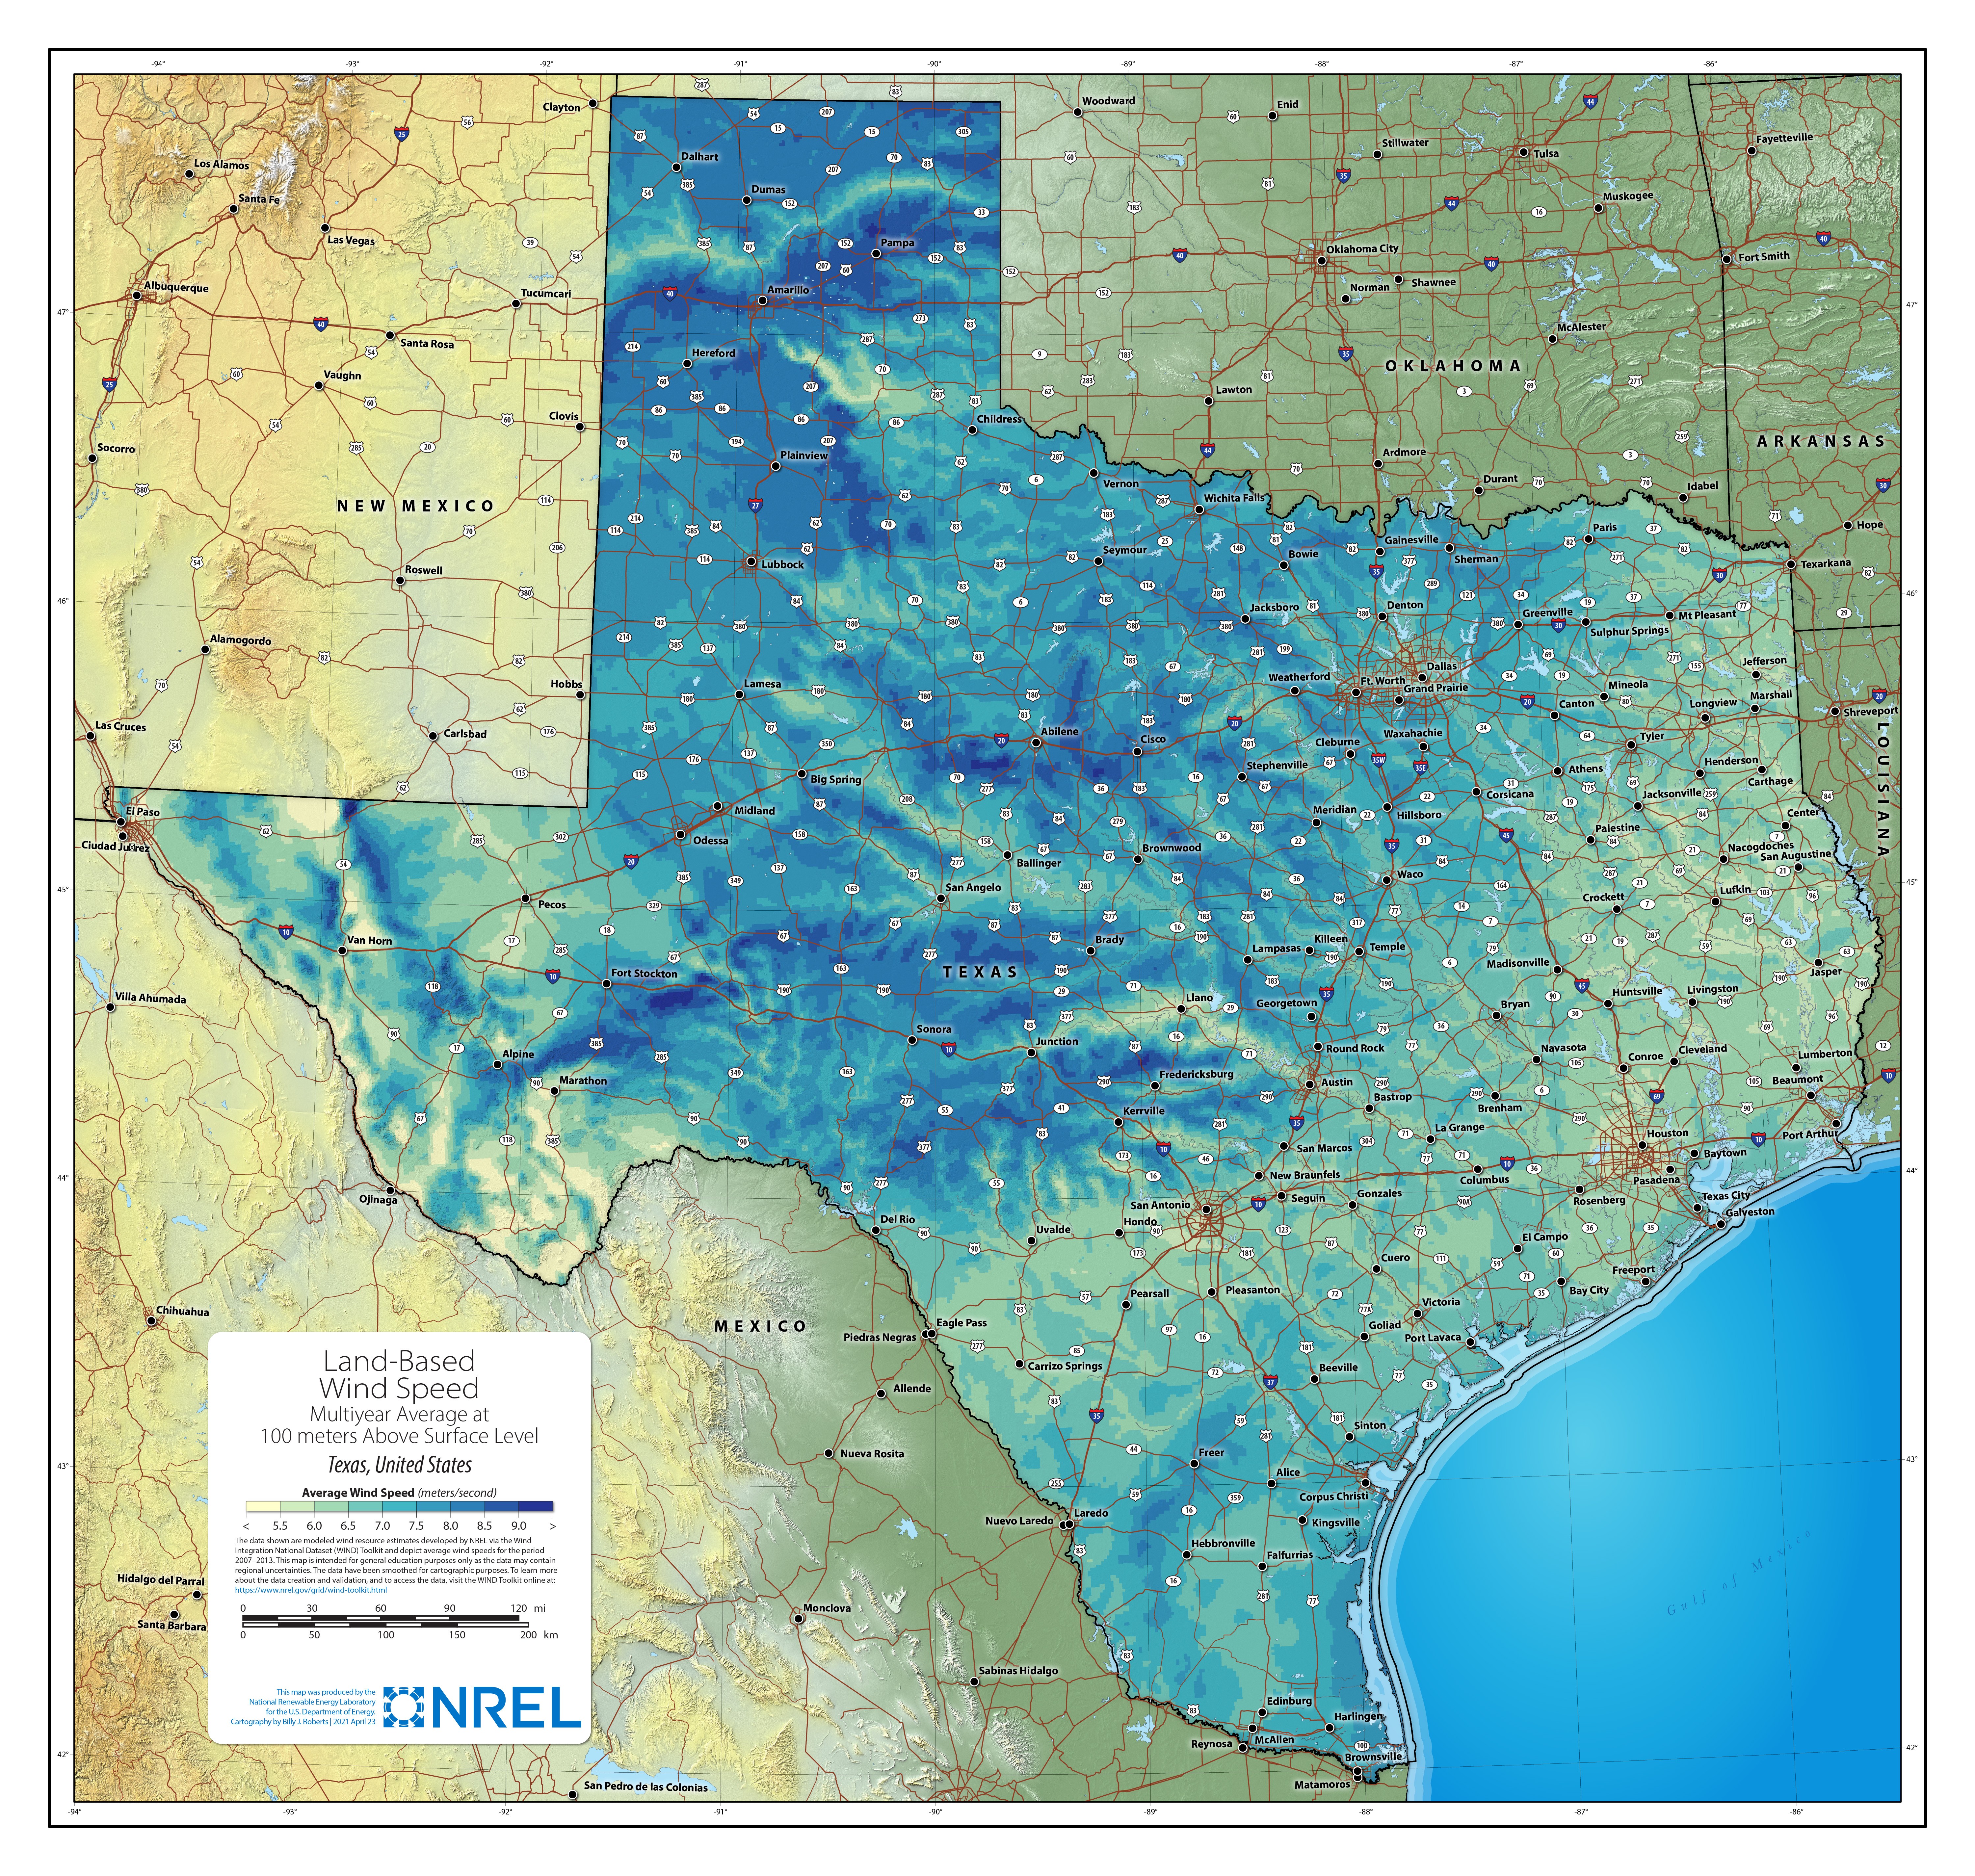 Texas Land-Based Wind Speed at 100 Meters